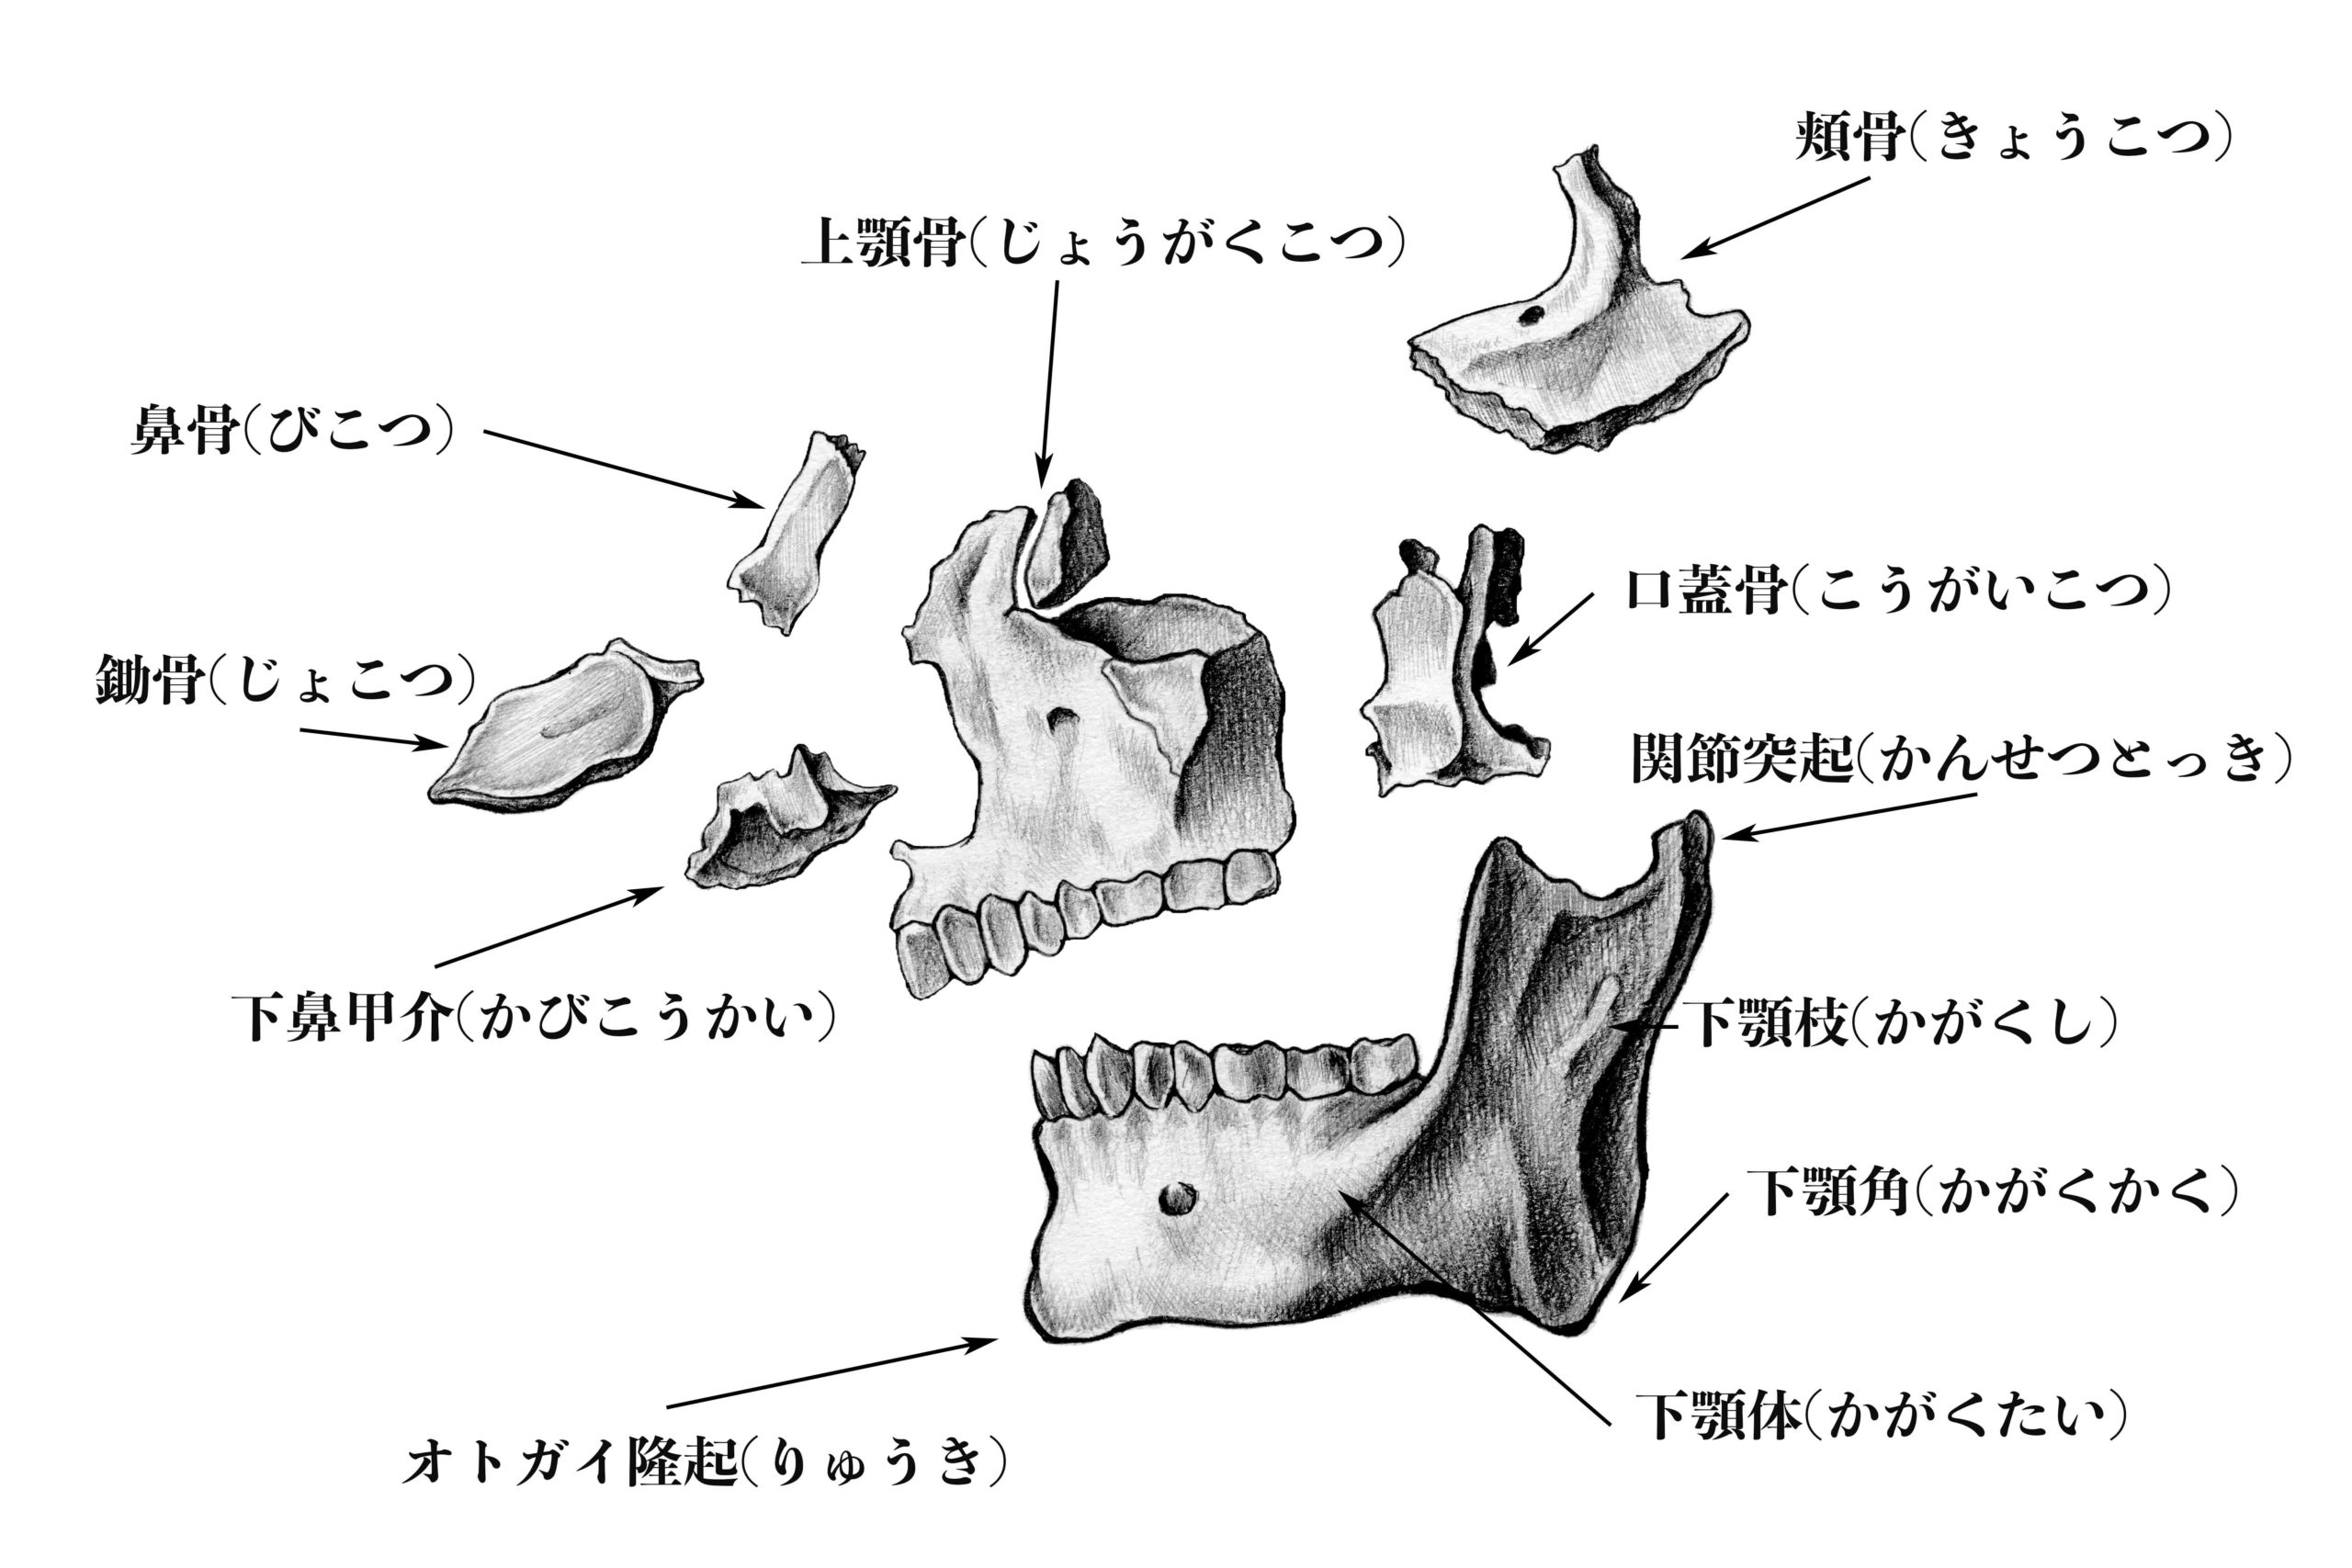 解剖学】#2 頭蓋骨の側面から見た構成 | ナツヲカケル−兼業クリエイター雑記−